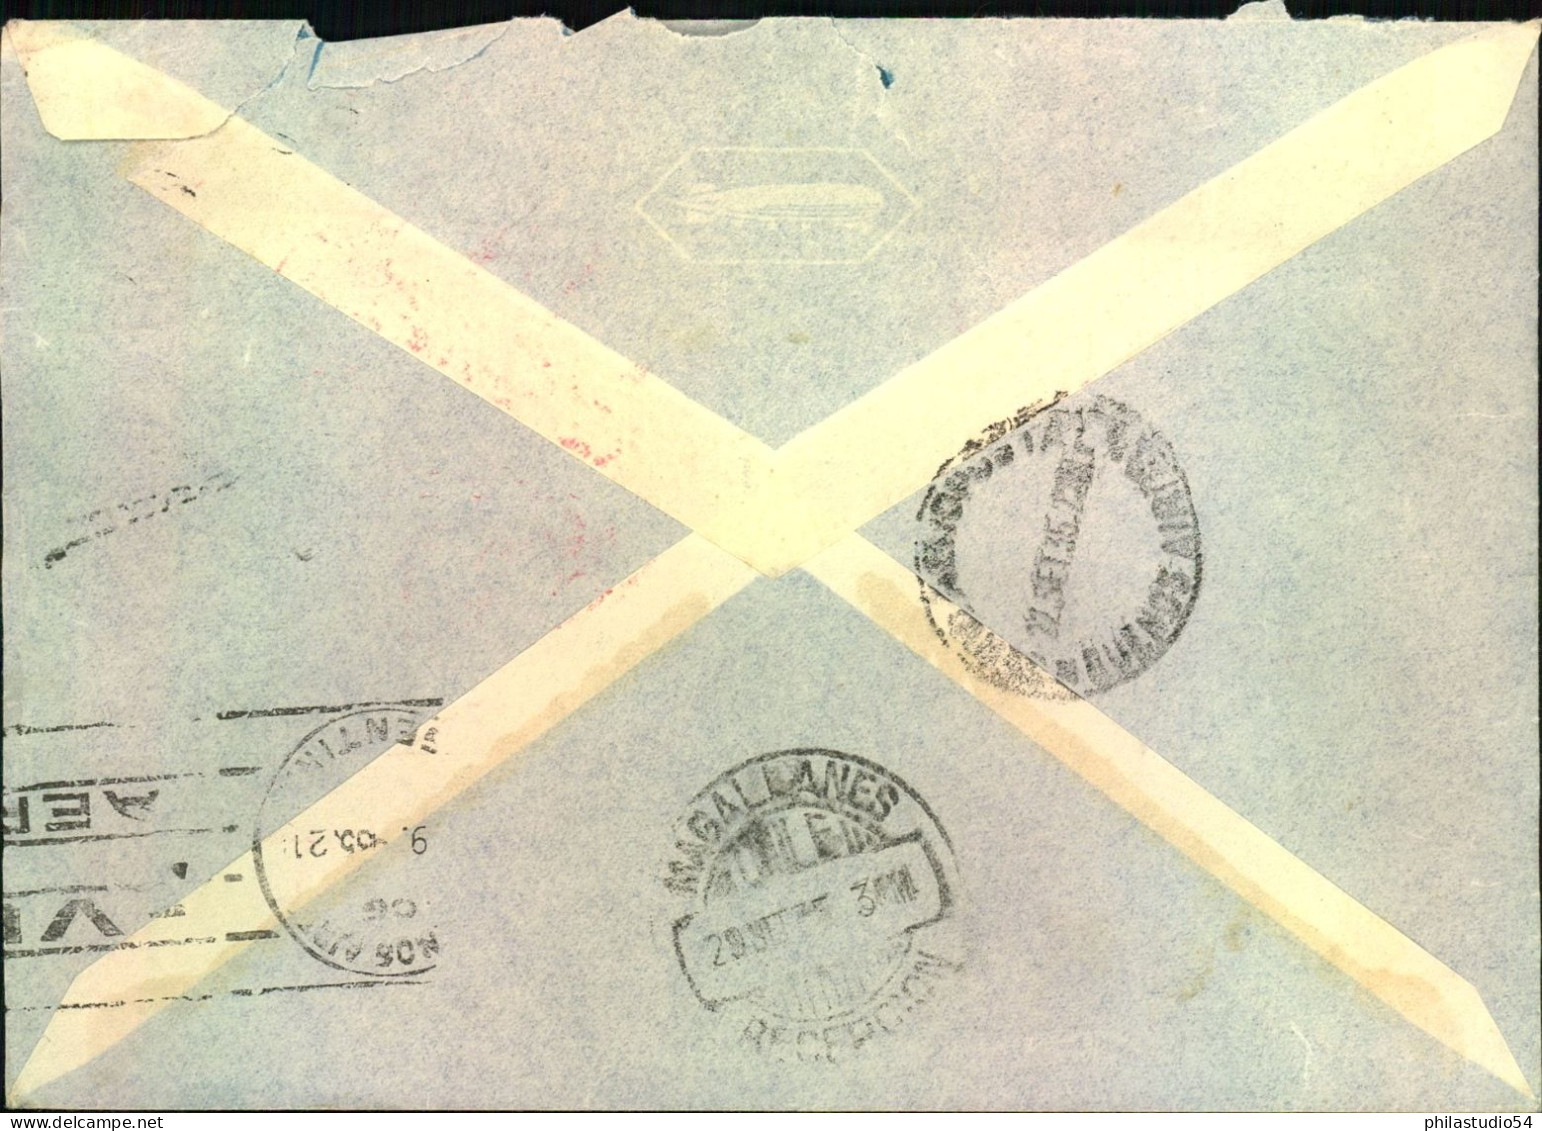 1935, Bunt Frankierter Luftpostbrief Ab TROSSINGEN Nach Magallanes, Chile - Entiers Postaux Privés